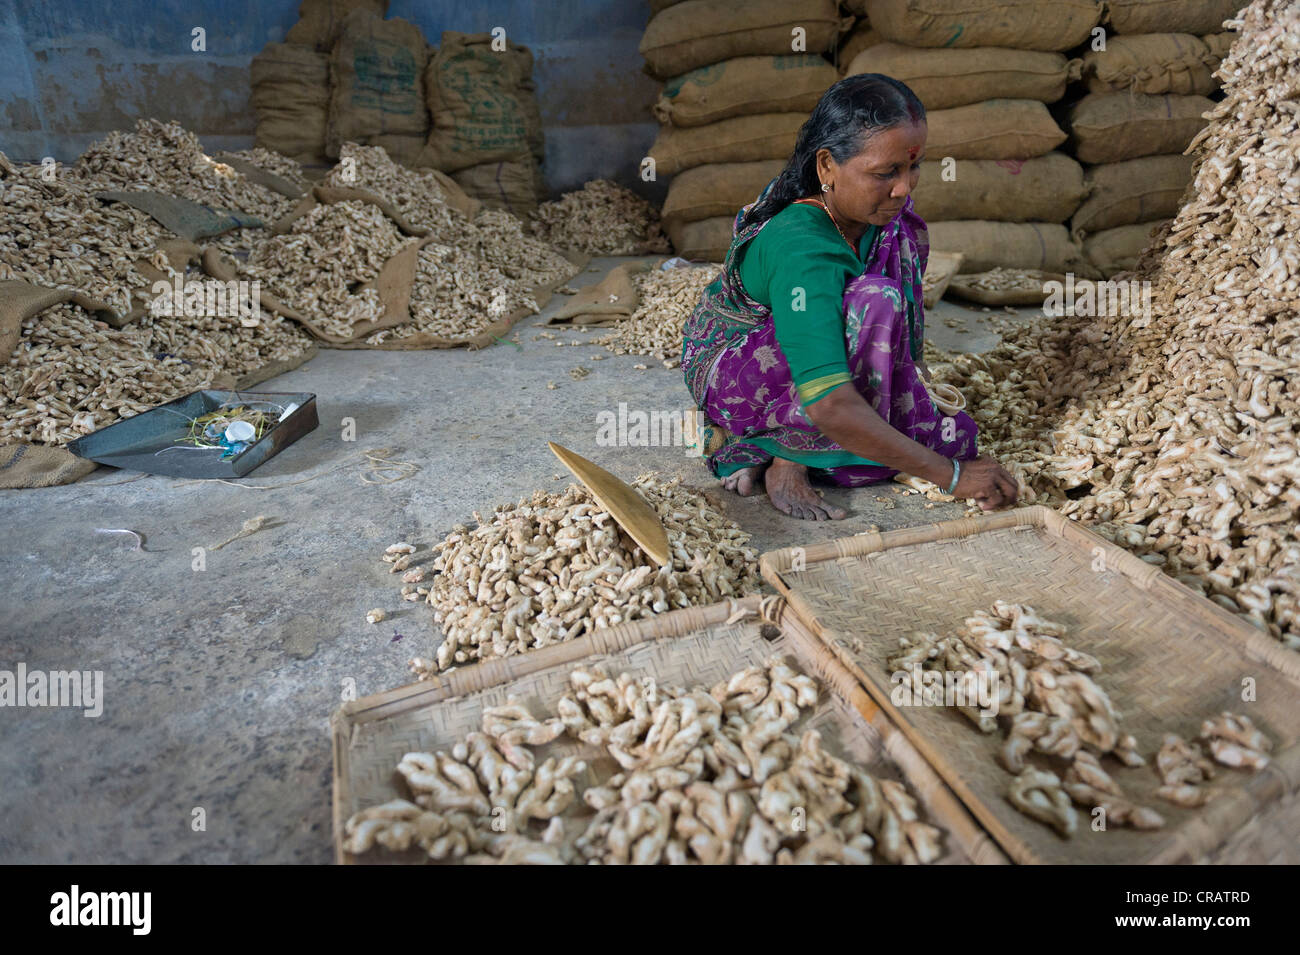 Les femmes travaillant dans un entrepôt d'épices, gingembre et sacs de gingembre, de Ville juif, Kochi, Kerala, Inde du Sud, Inde, Asie Banque D'Images